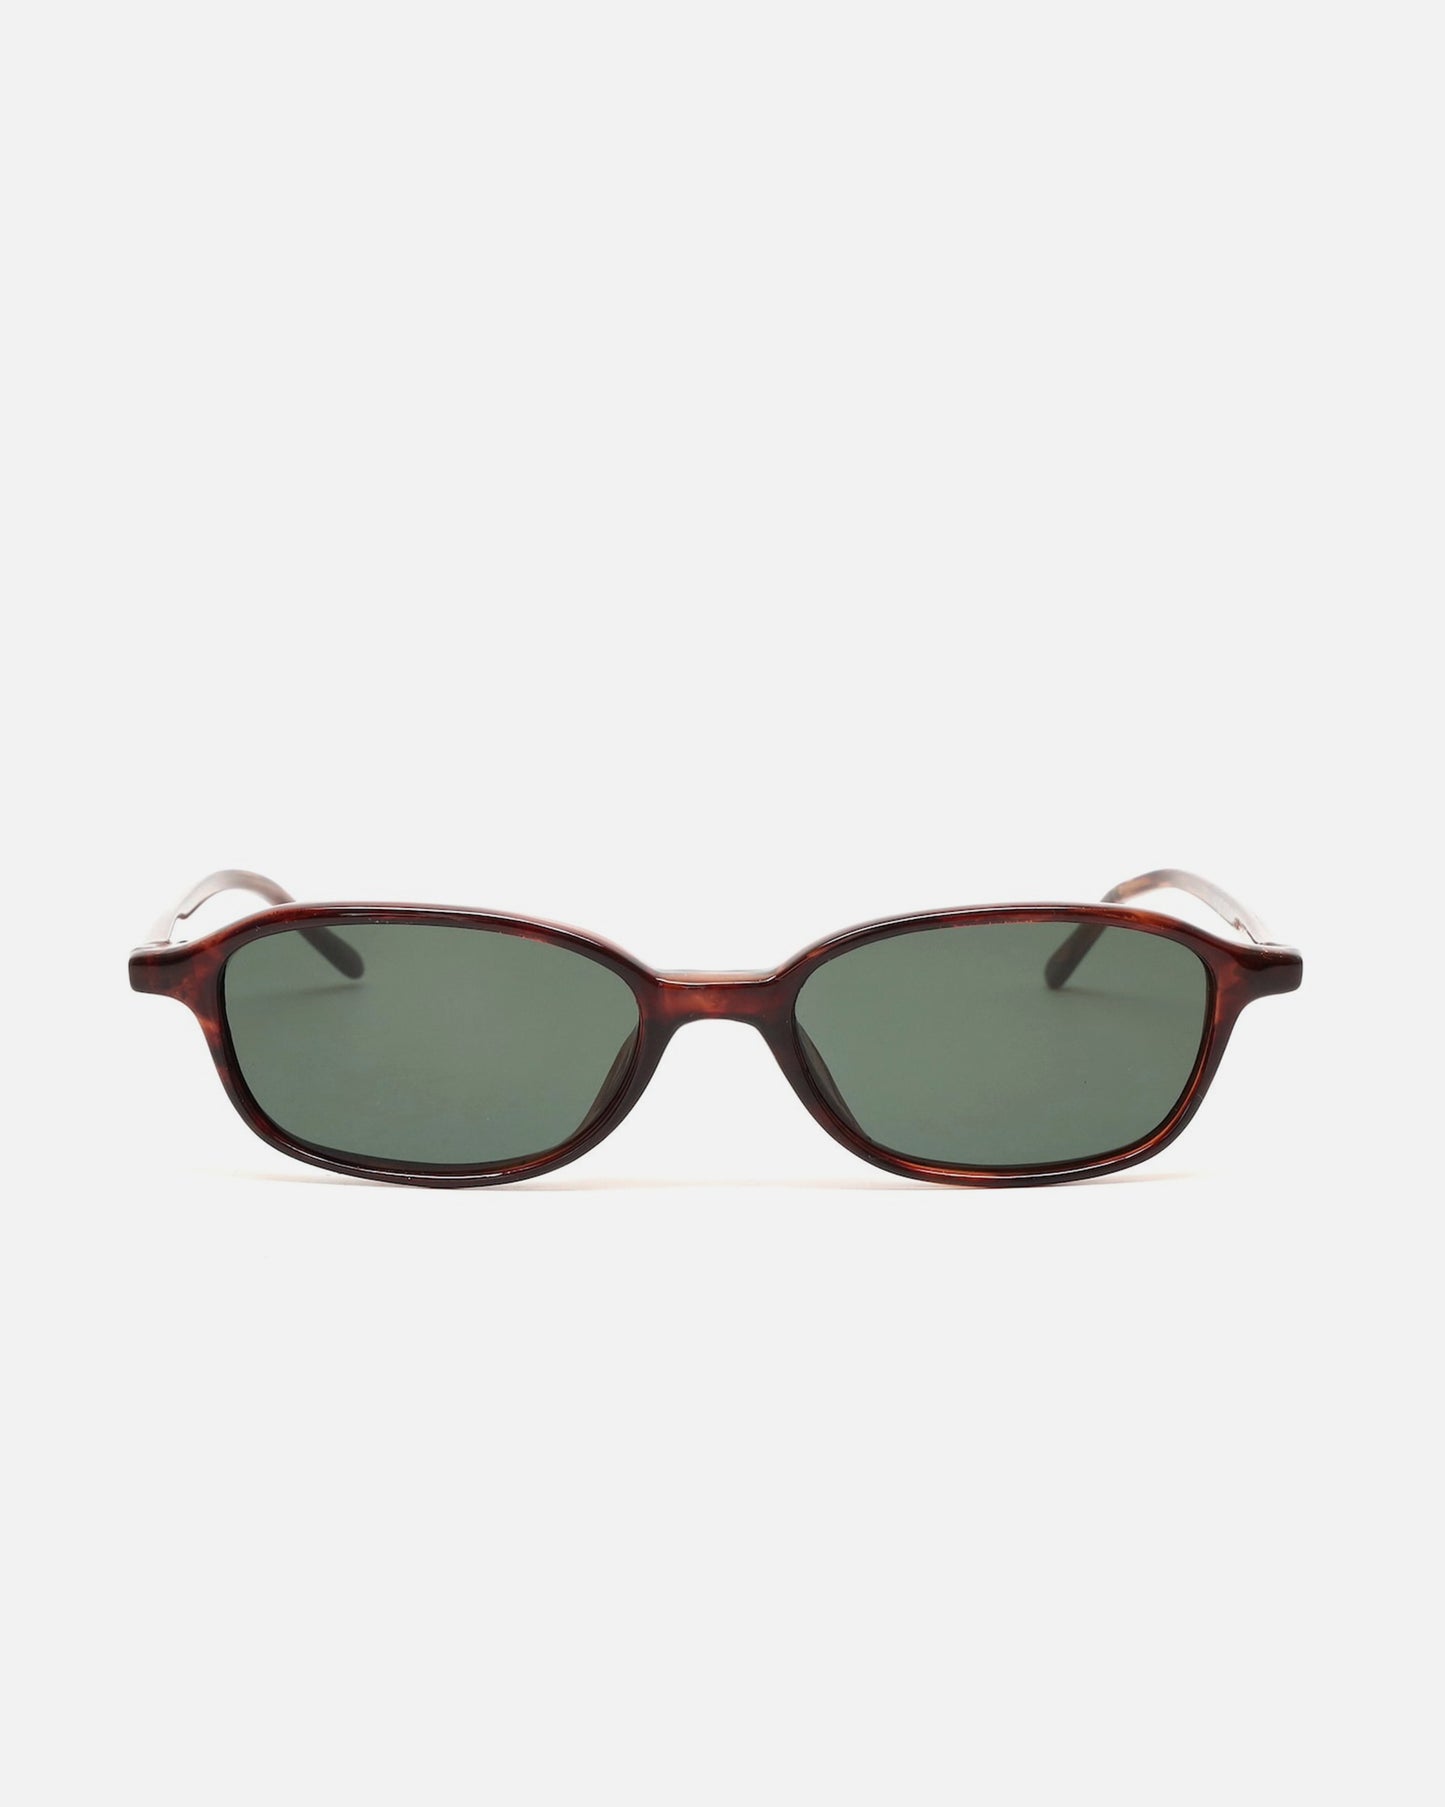 NOS 90s Tortoise Rectangle Frame Sunglasses